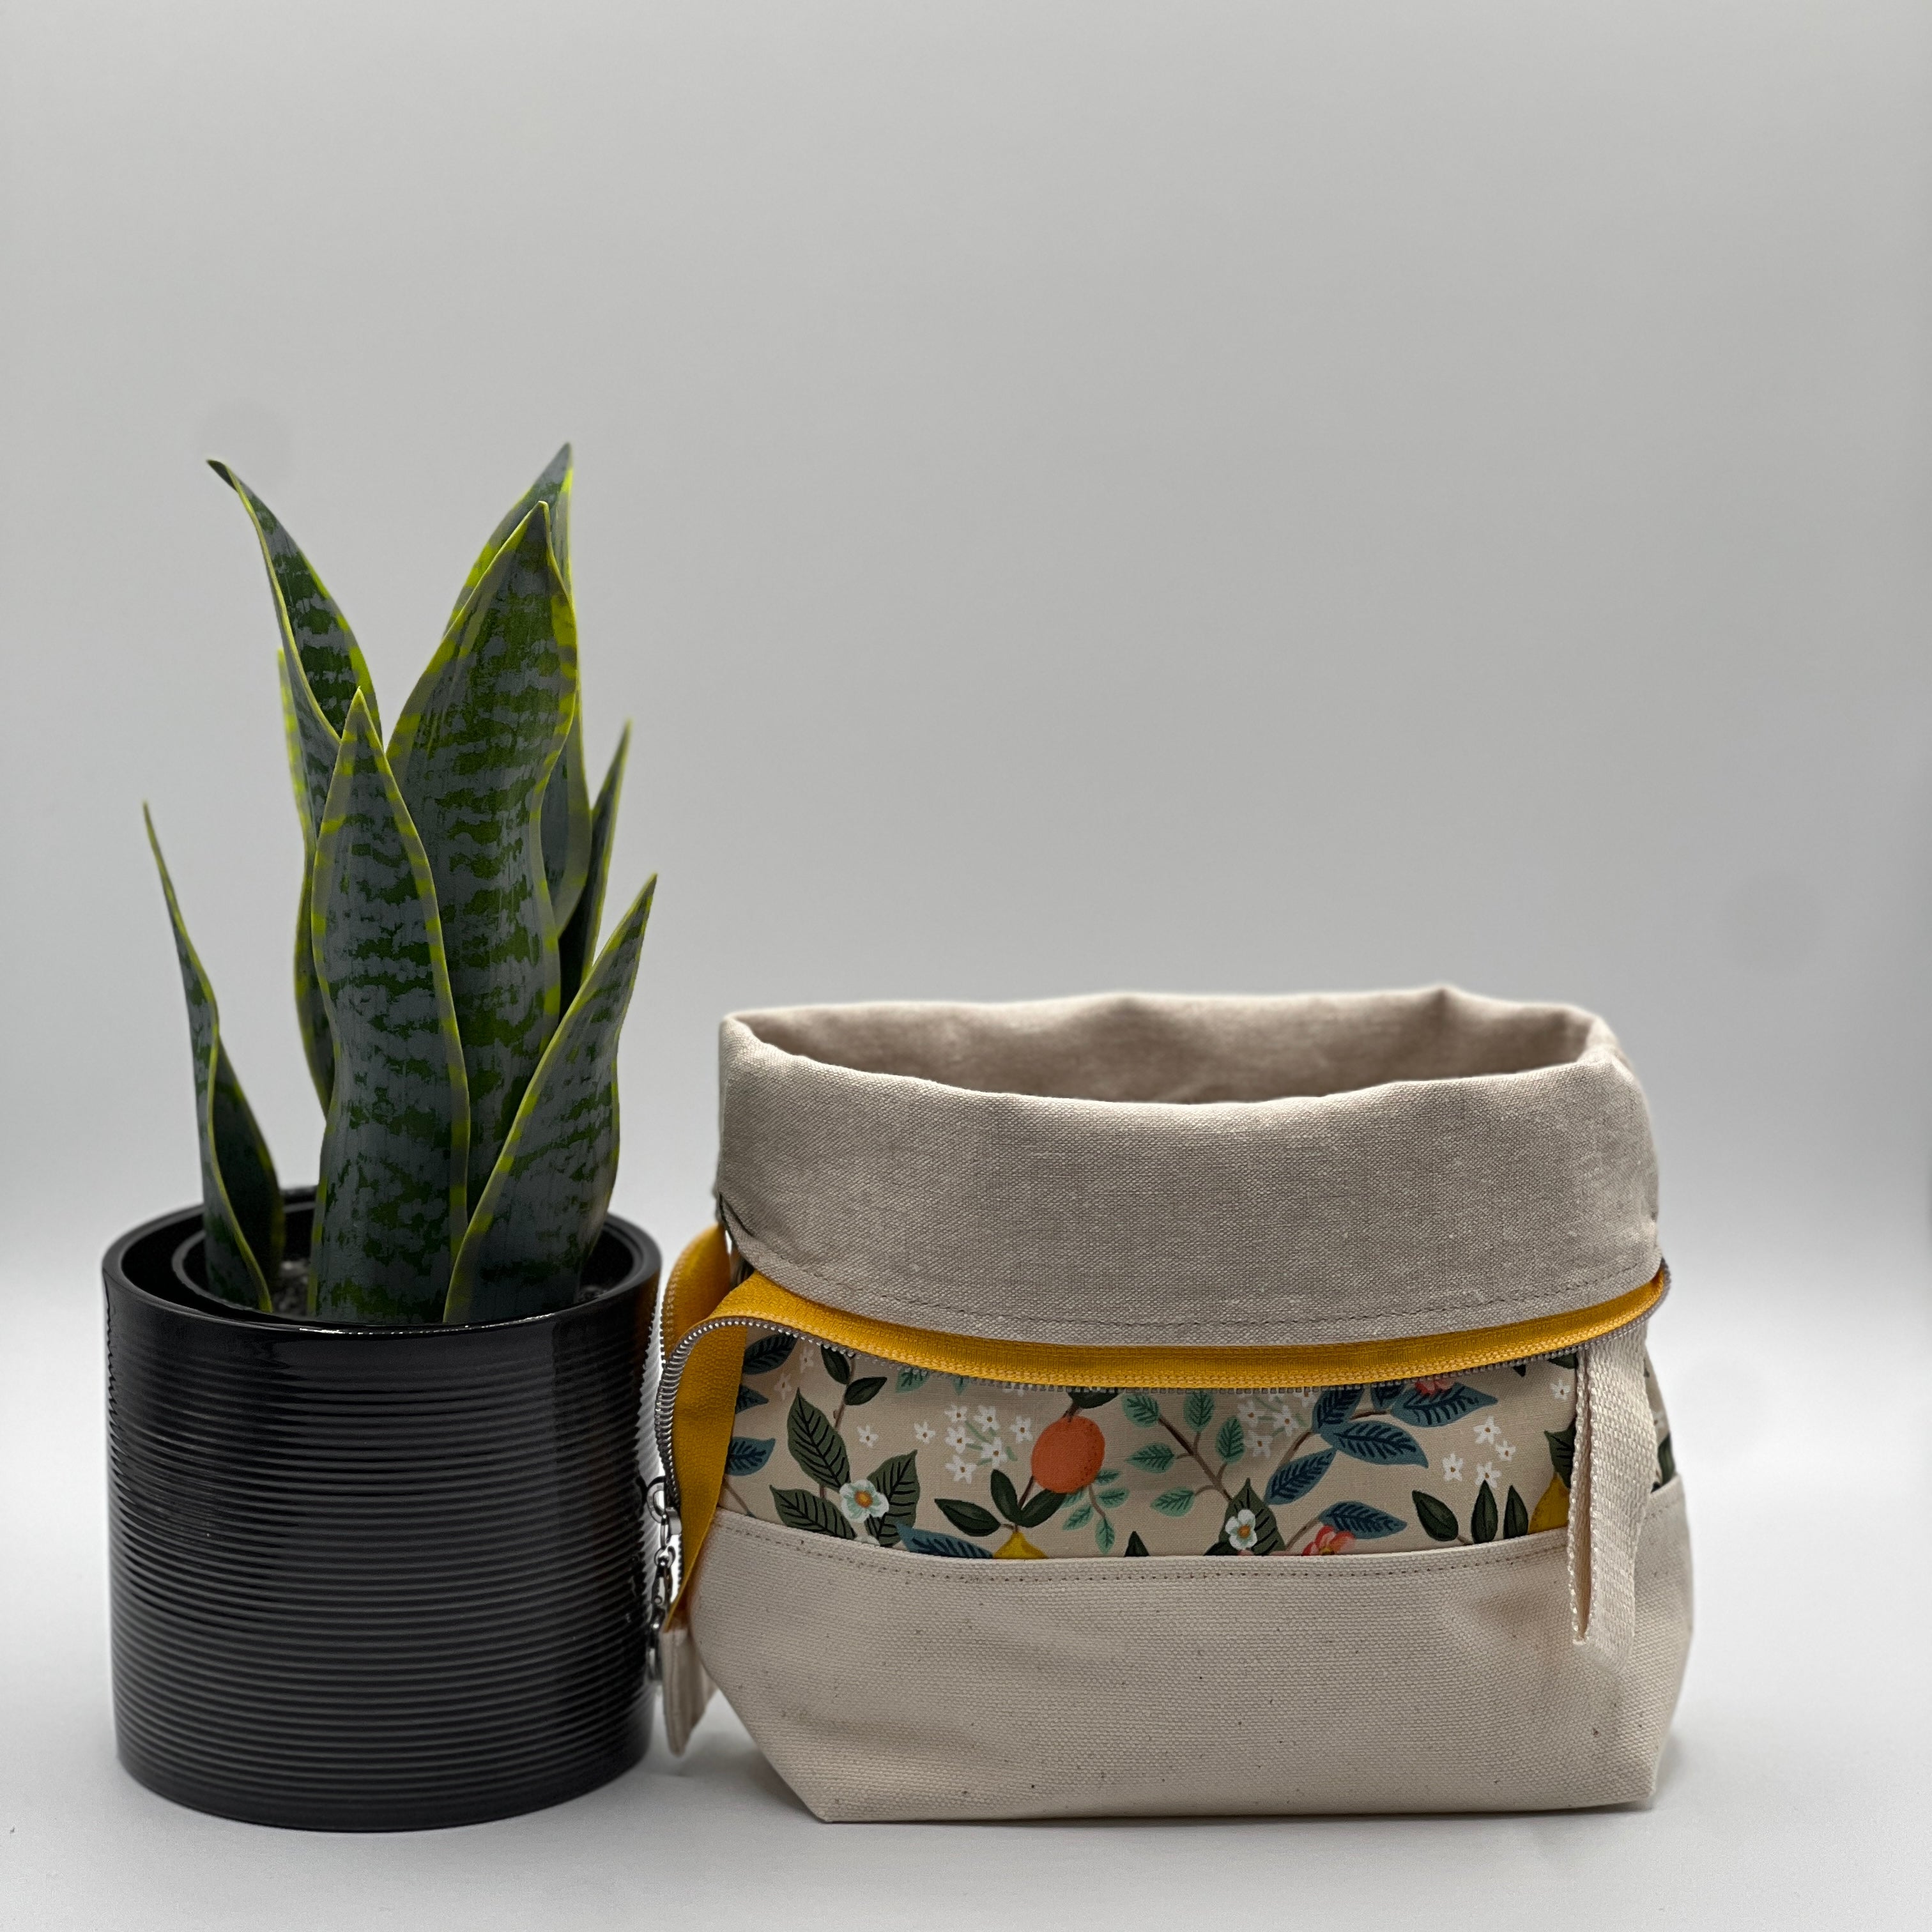 Petit sac à projet / Small project bag - ZIP - Bramble - Citrus Grove, crème